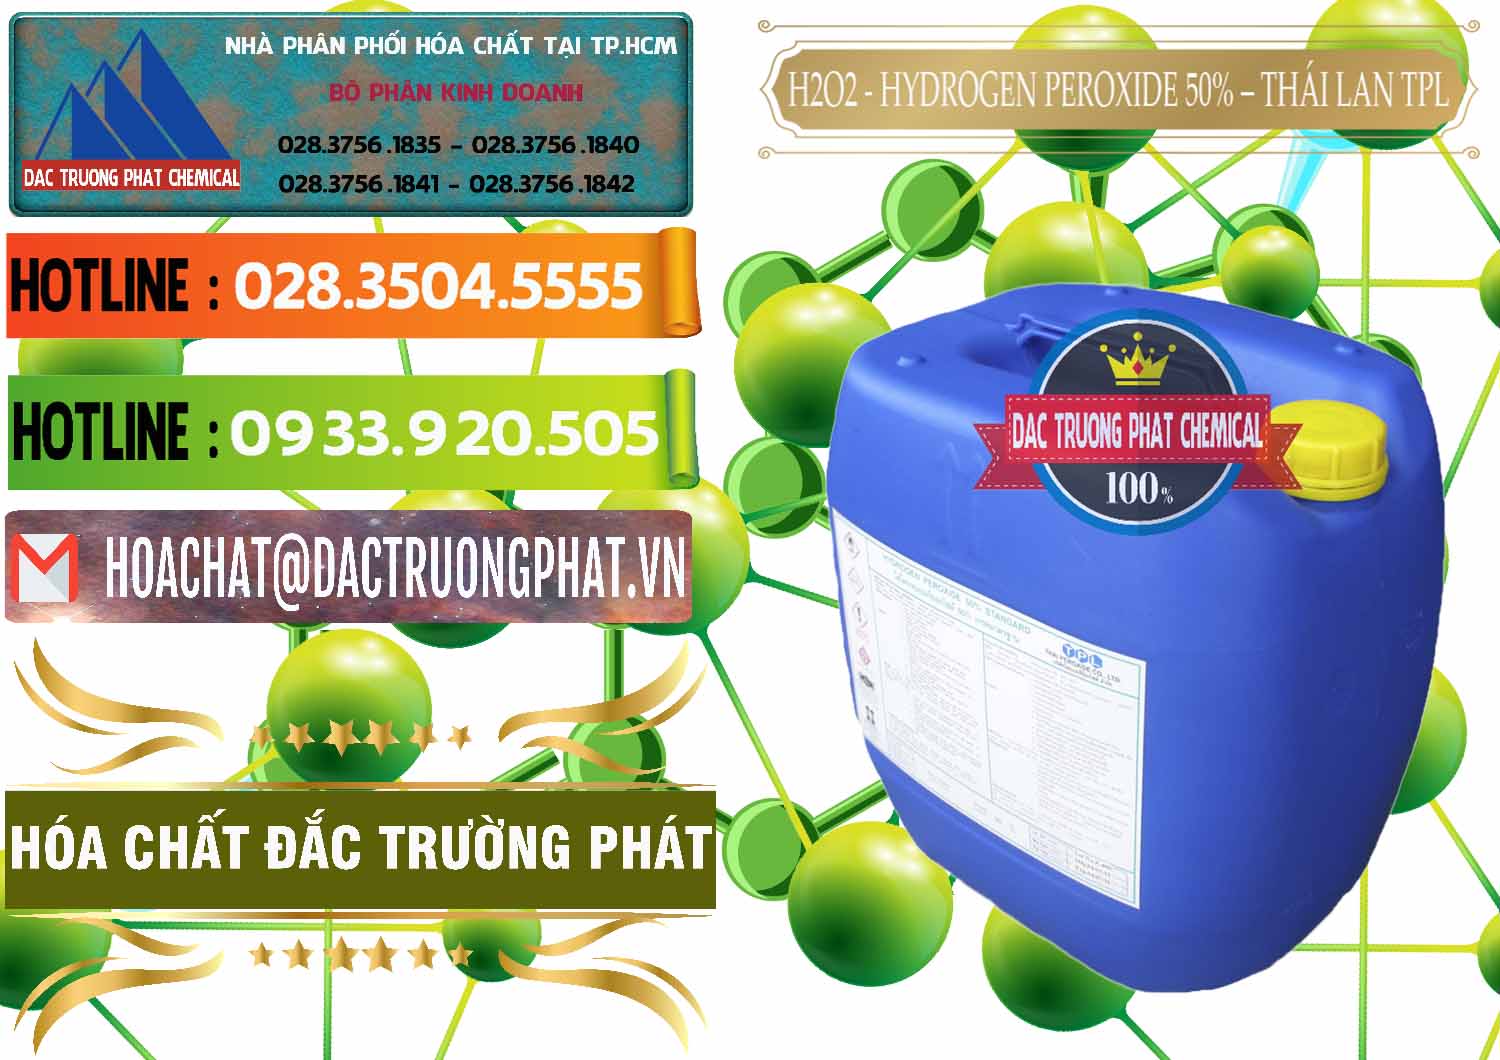 Chuyên cung cấp và bán H2O2 - Hydrogen Peroxide 50% Thái Lan TPL - 0076 - Nhập khẩu & cung cấp hóa chất tại TP.HCM - cungcaphoachat.com.vn